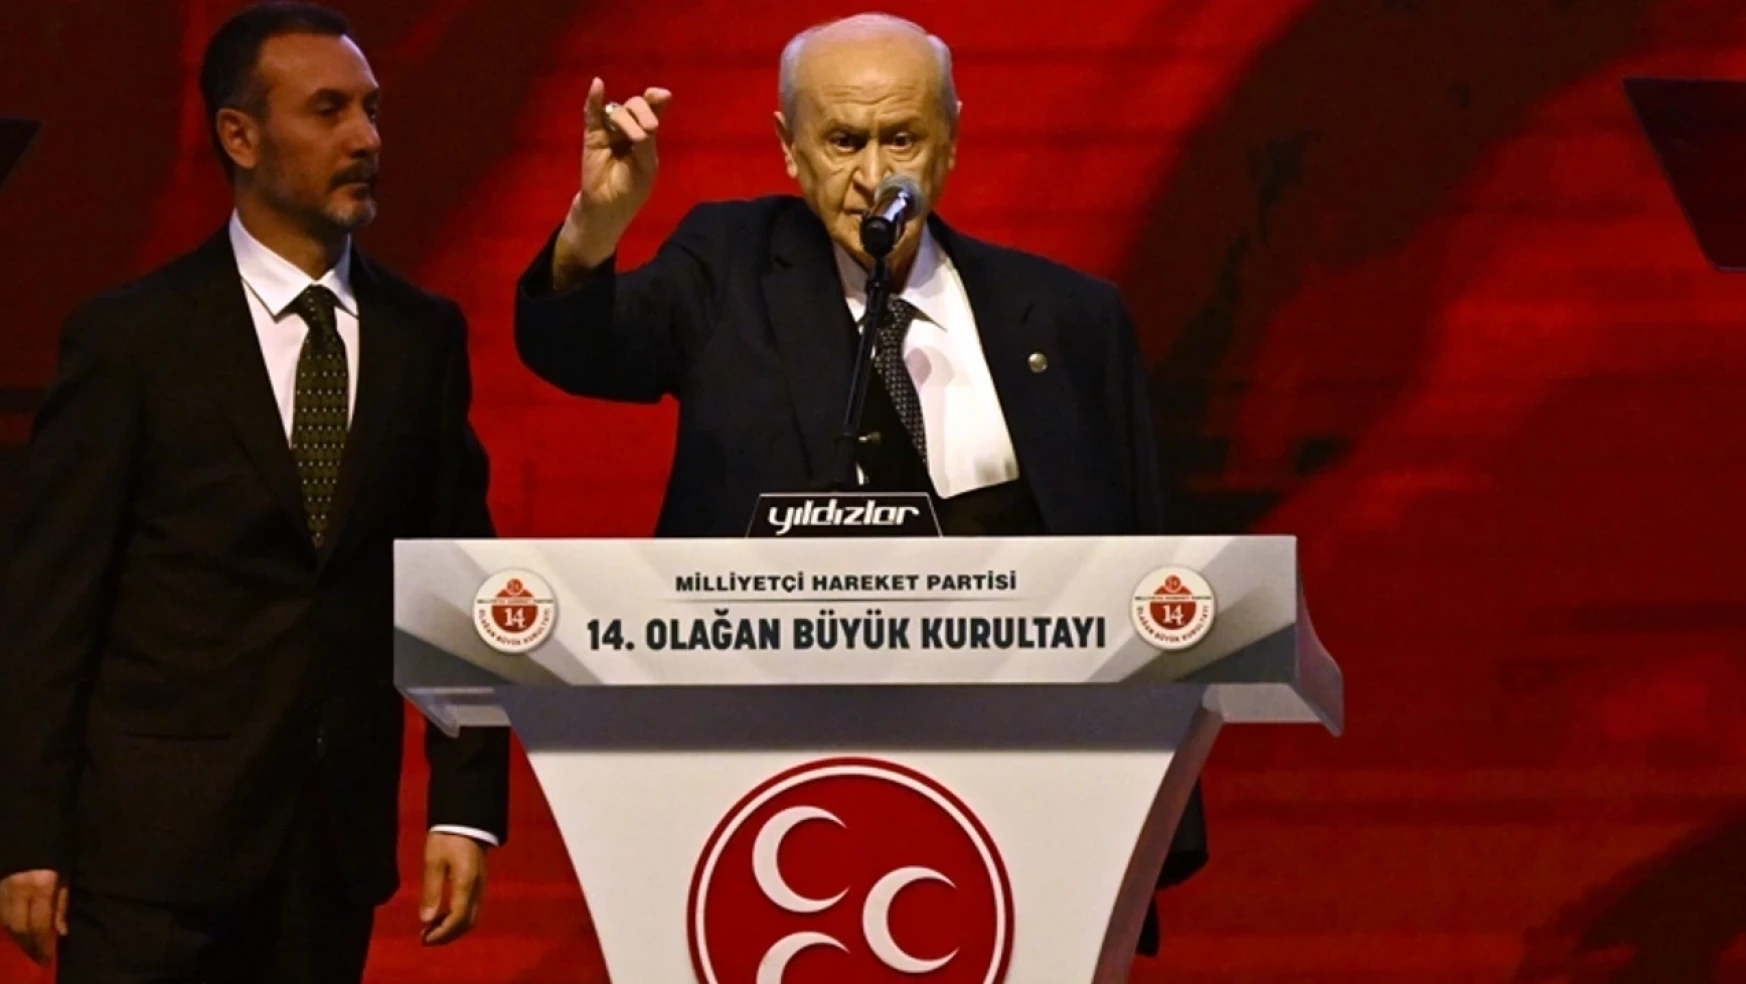 MHP Lideri Devlet Bahçeli: CHP, DEM'lenip PKK ile ittifak kurmanın bedelini sandıkta ödeyecektir!